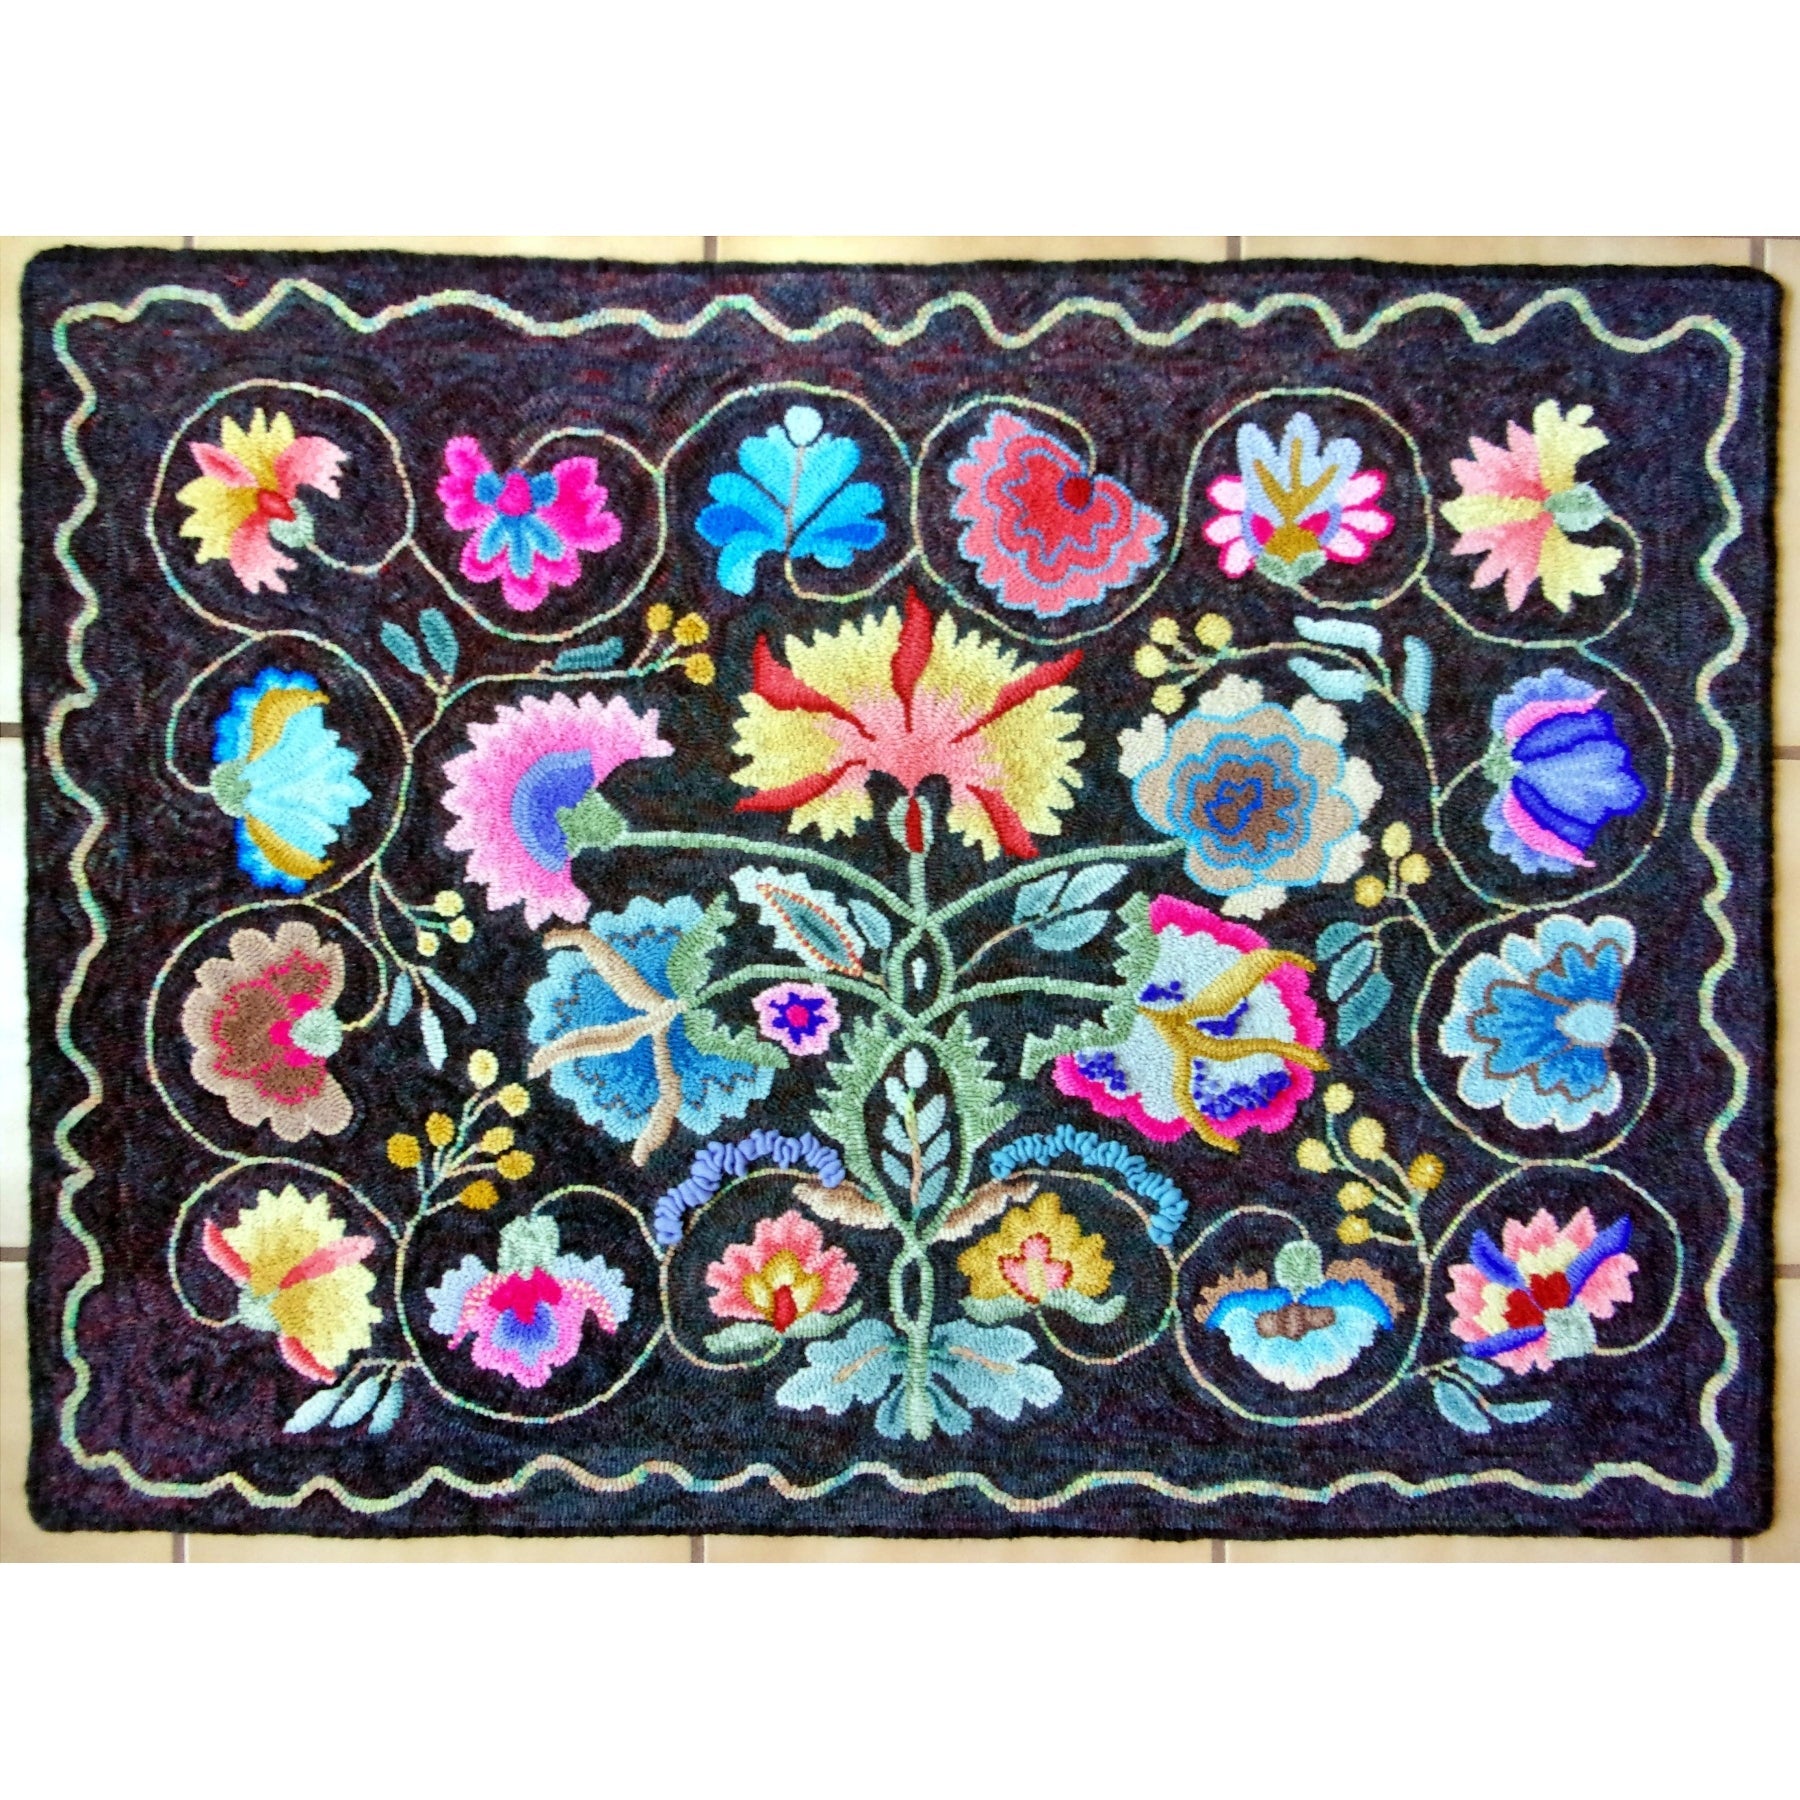 Bedrug Fantasy, rug hooked by Sondra Kellar